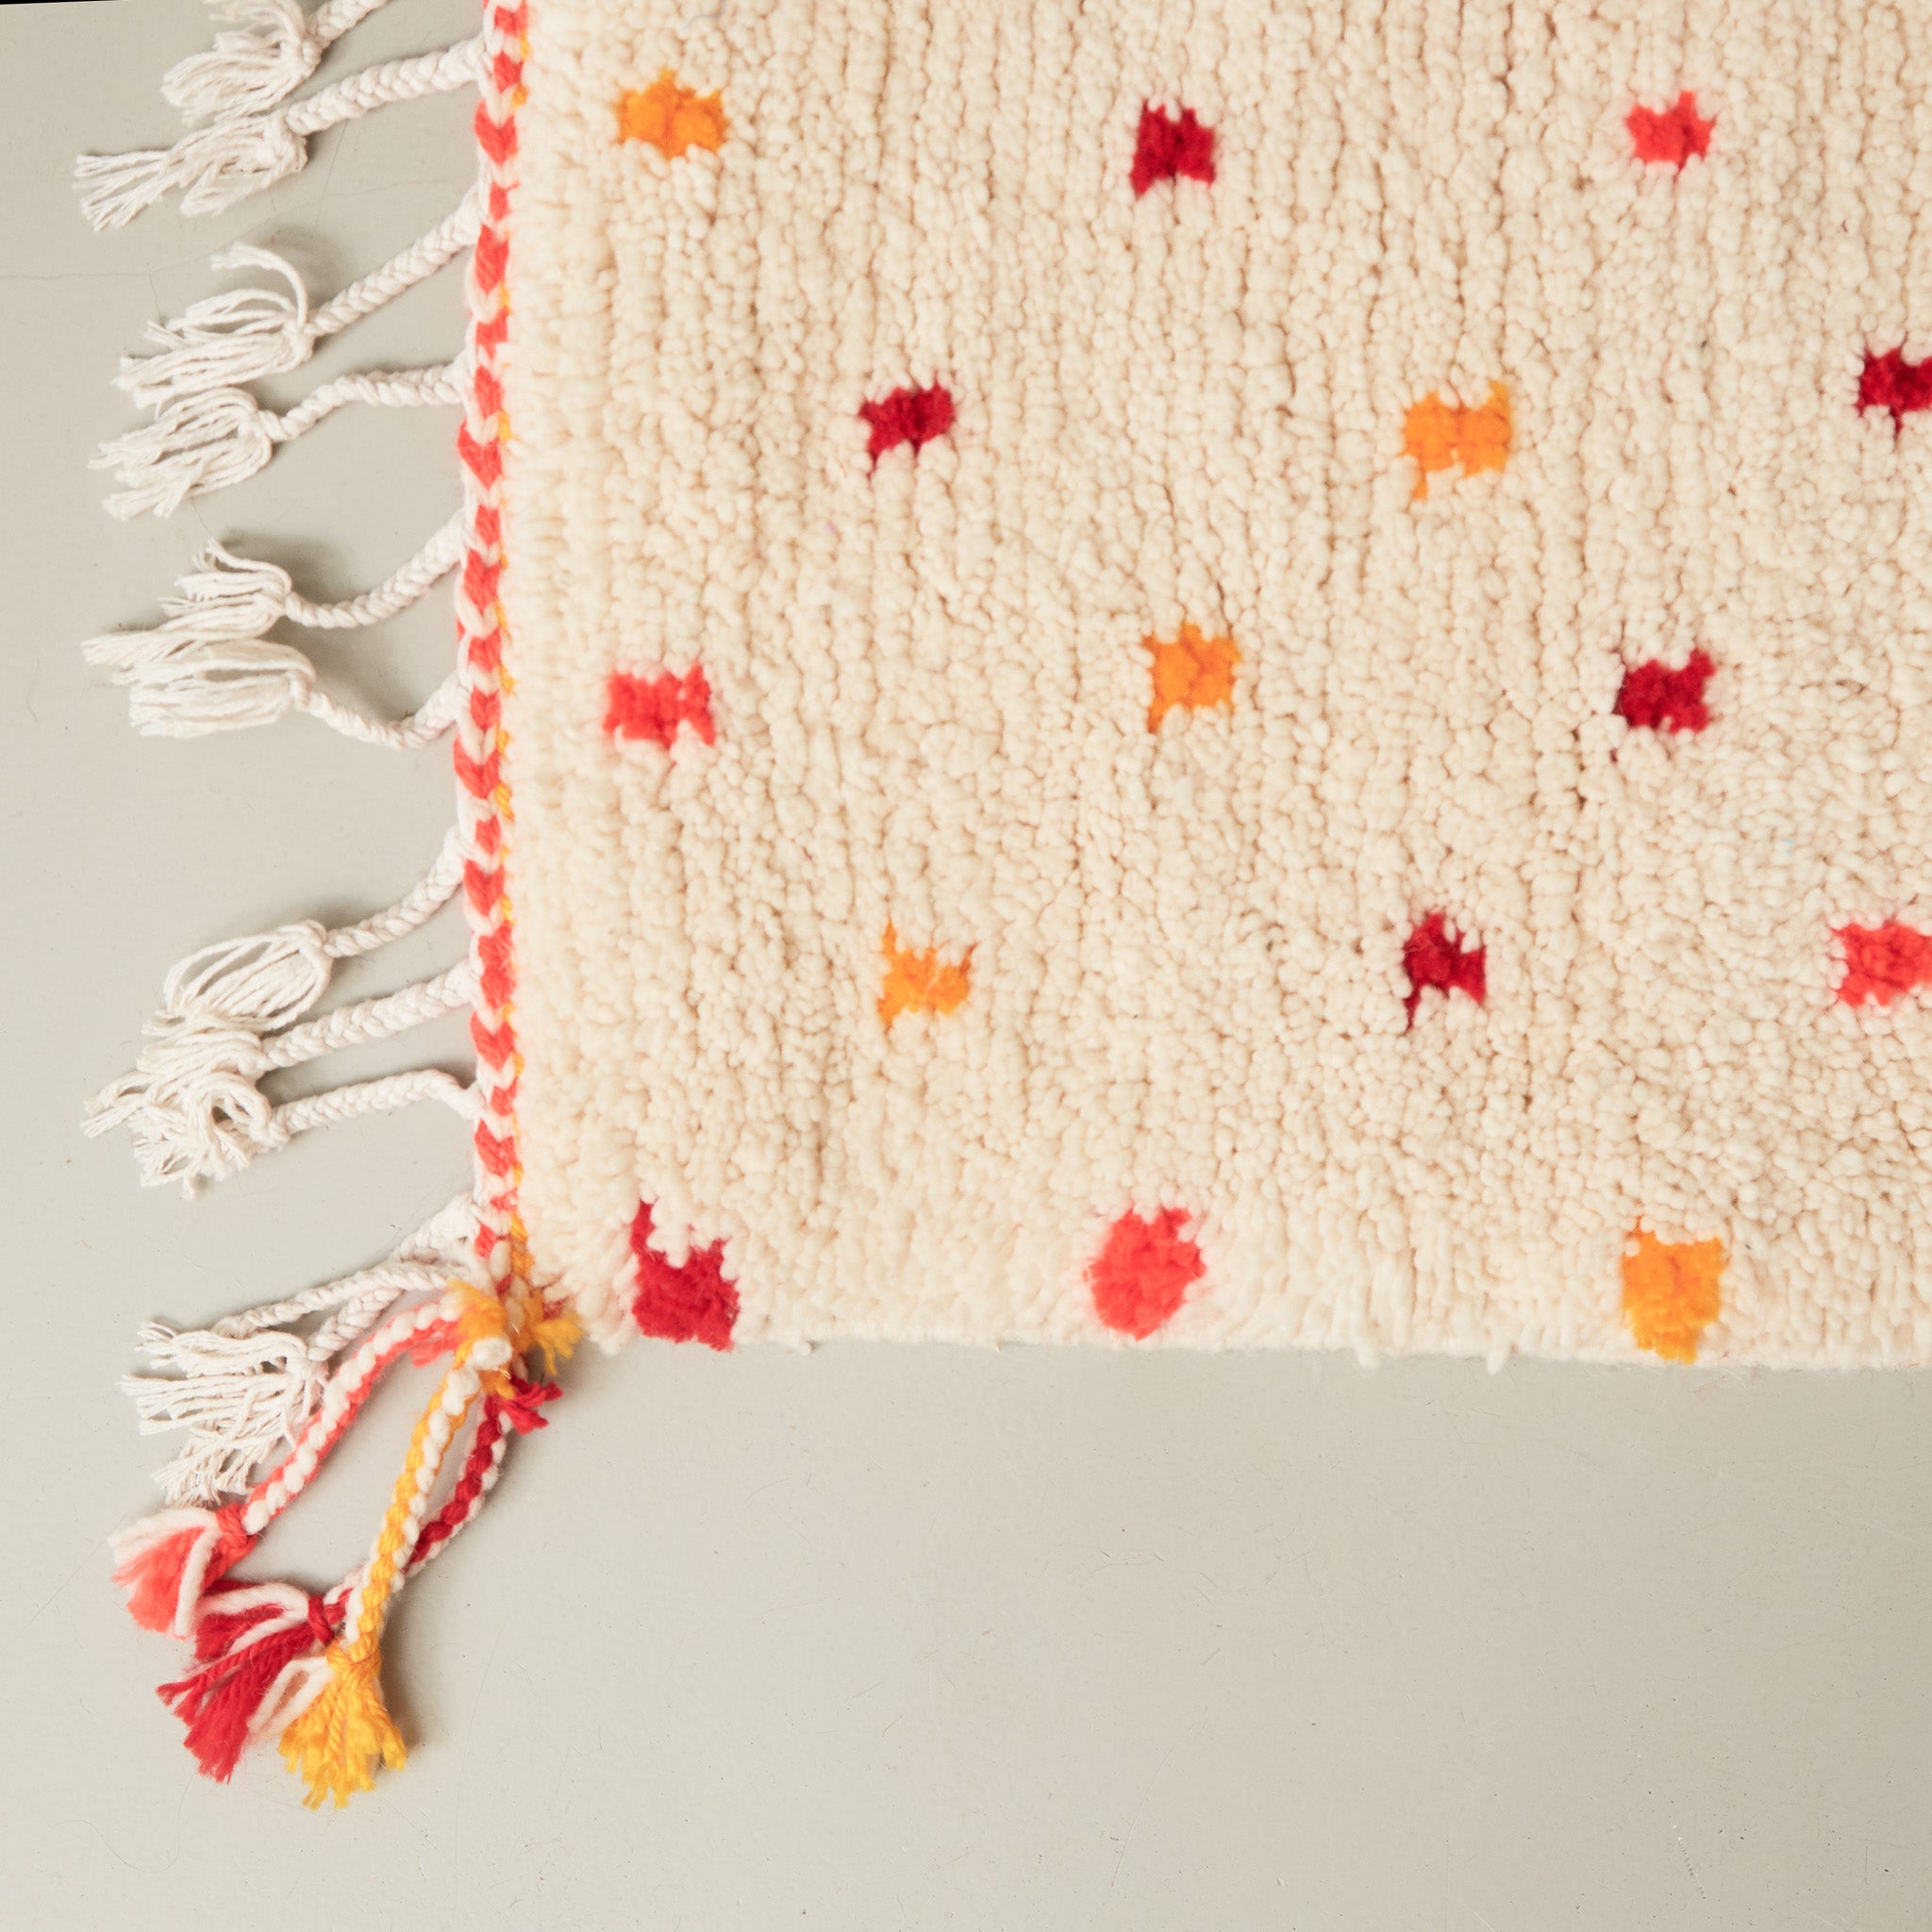 dettaglio dell'angolo e della frangia colorata di un tappeto azilal in lana chiara con pois gialli rossi arancioni